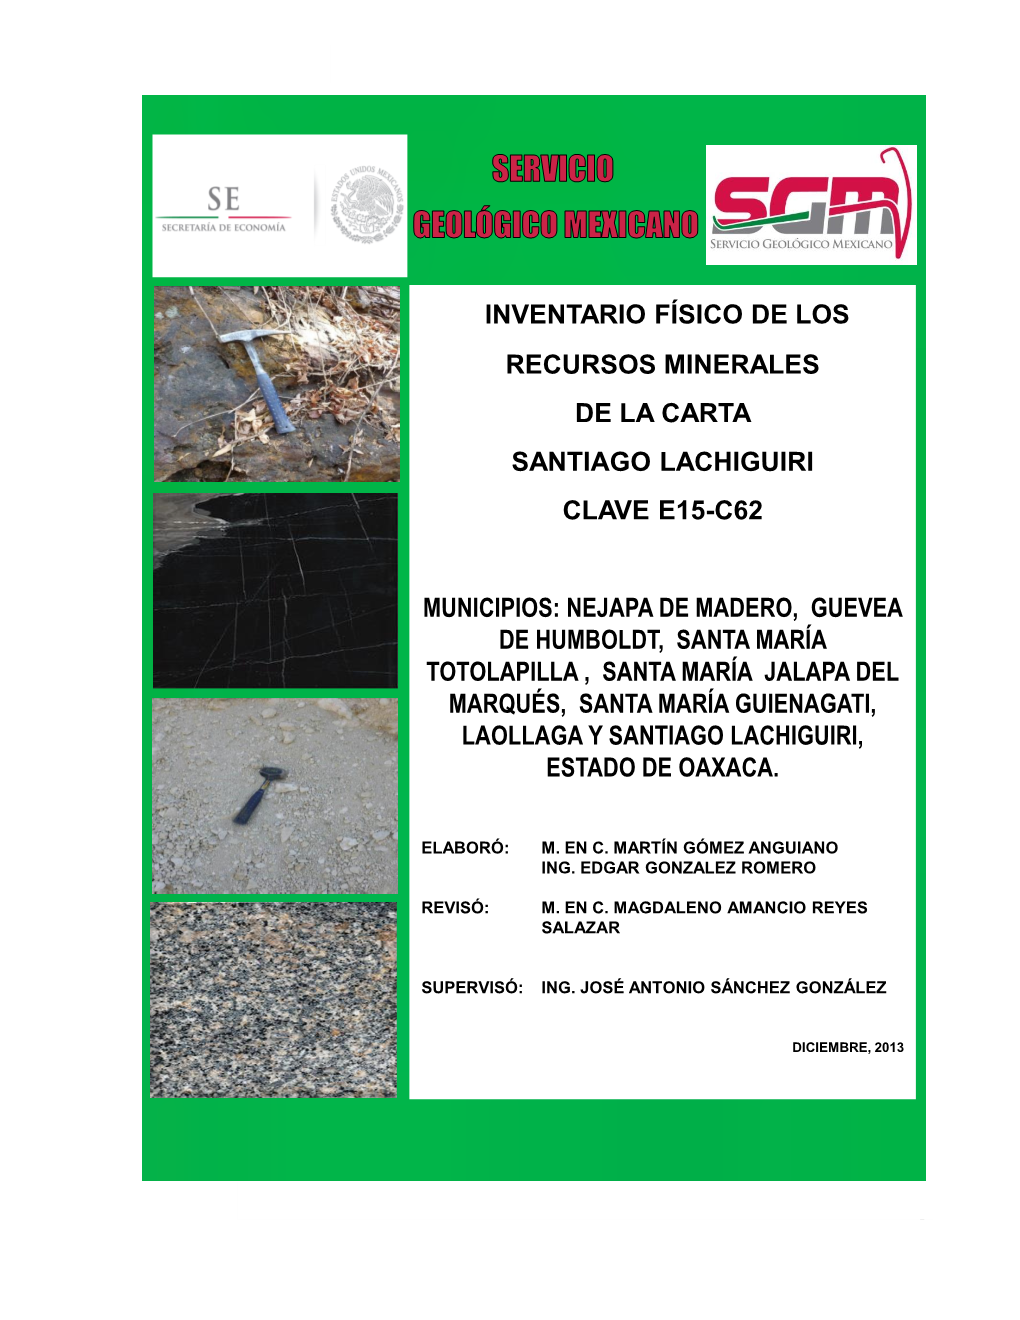 Inventario Físico De Los Recursos Minerales Santiago Lachiguiri, Clave E15-C62, Escala 1:50,000, Estado De Oaxaca (Al Final Del Texto)